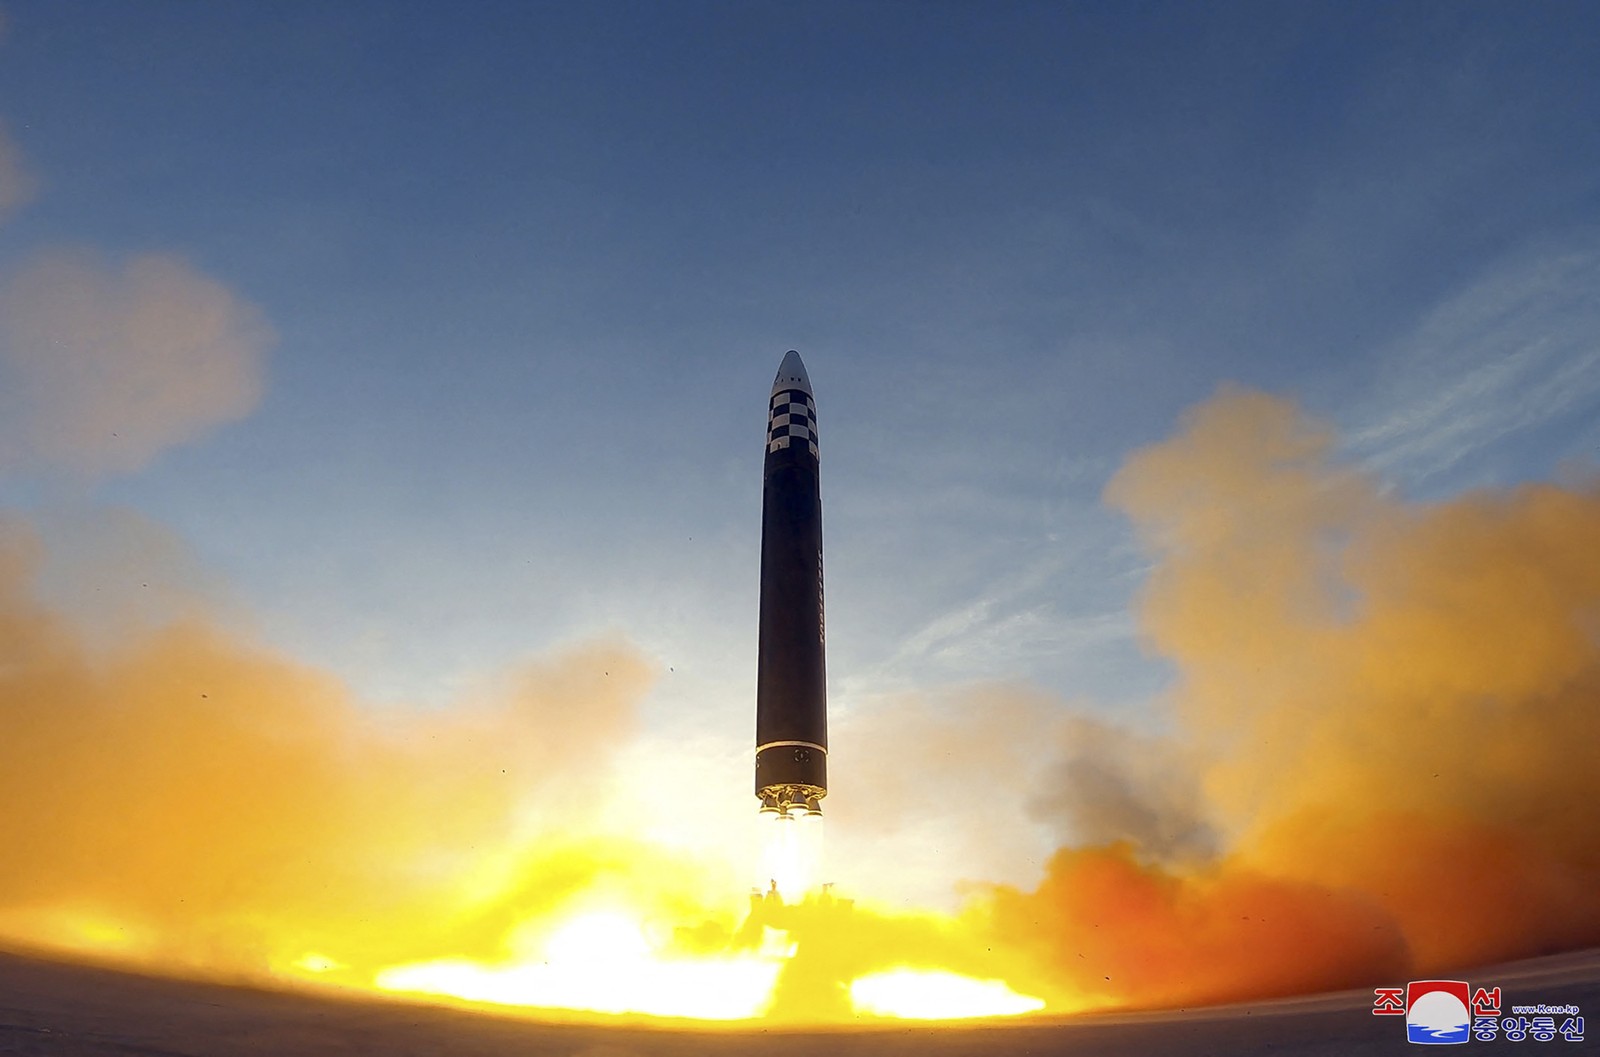 Coreia do Norte divulga imagem doo lançamento do míssil balístico intercontinental Hwasong-17 (ICBM) no Aeroporto Internacional de Pyongyang — Foto: KCNA VIA KNS/AFP